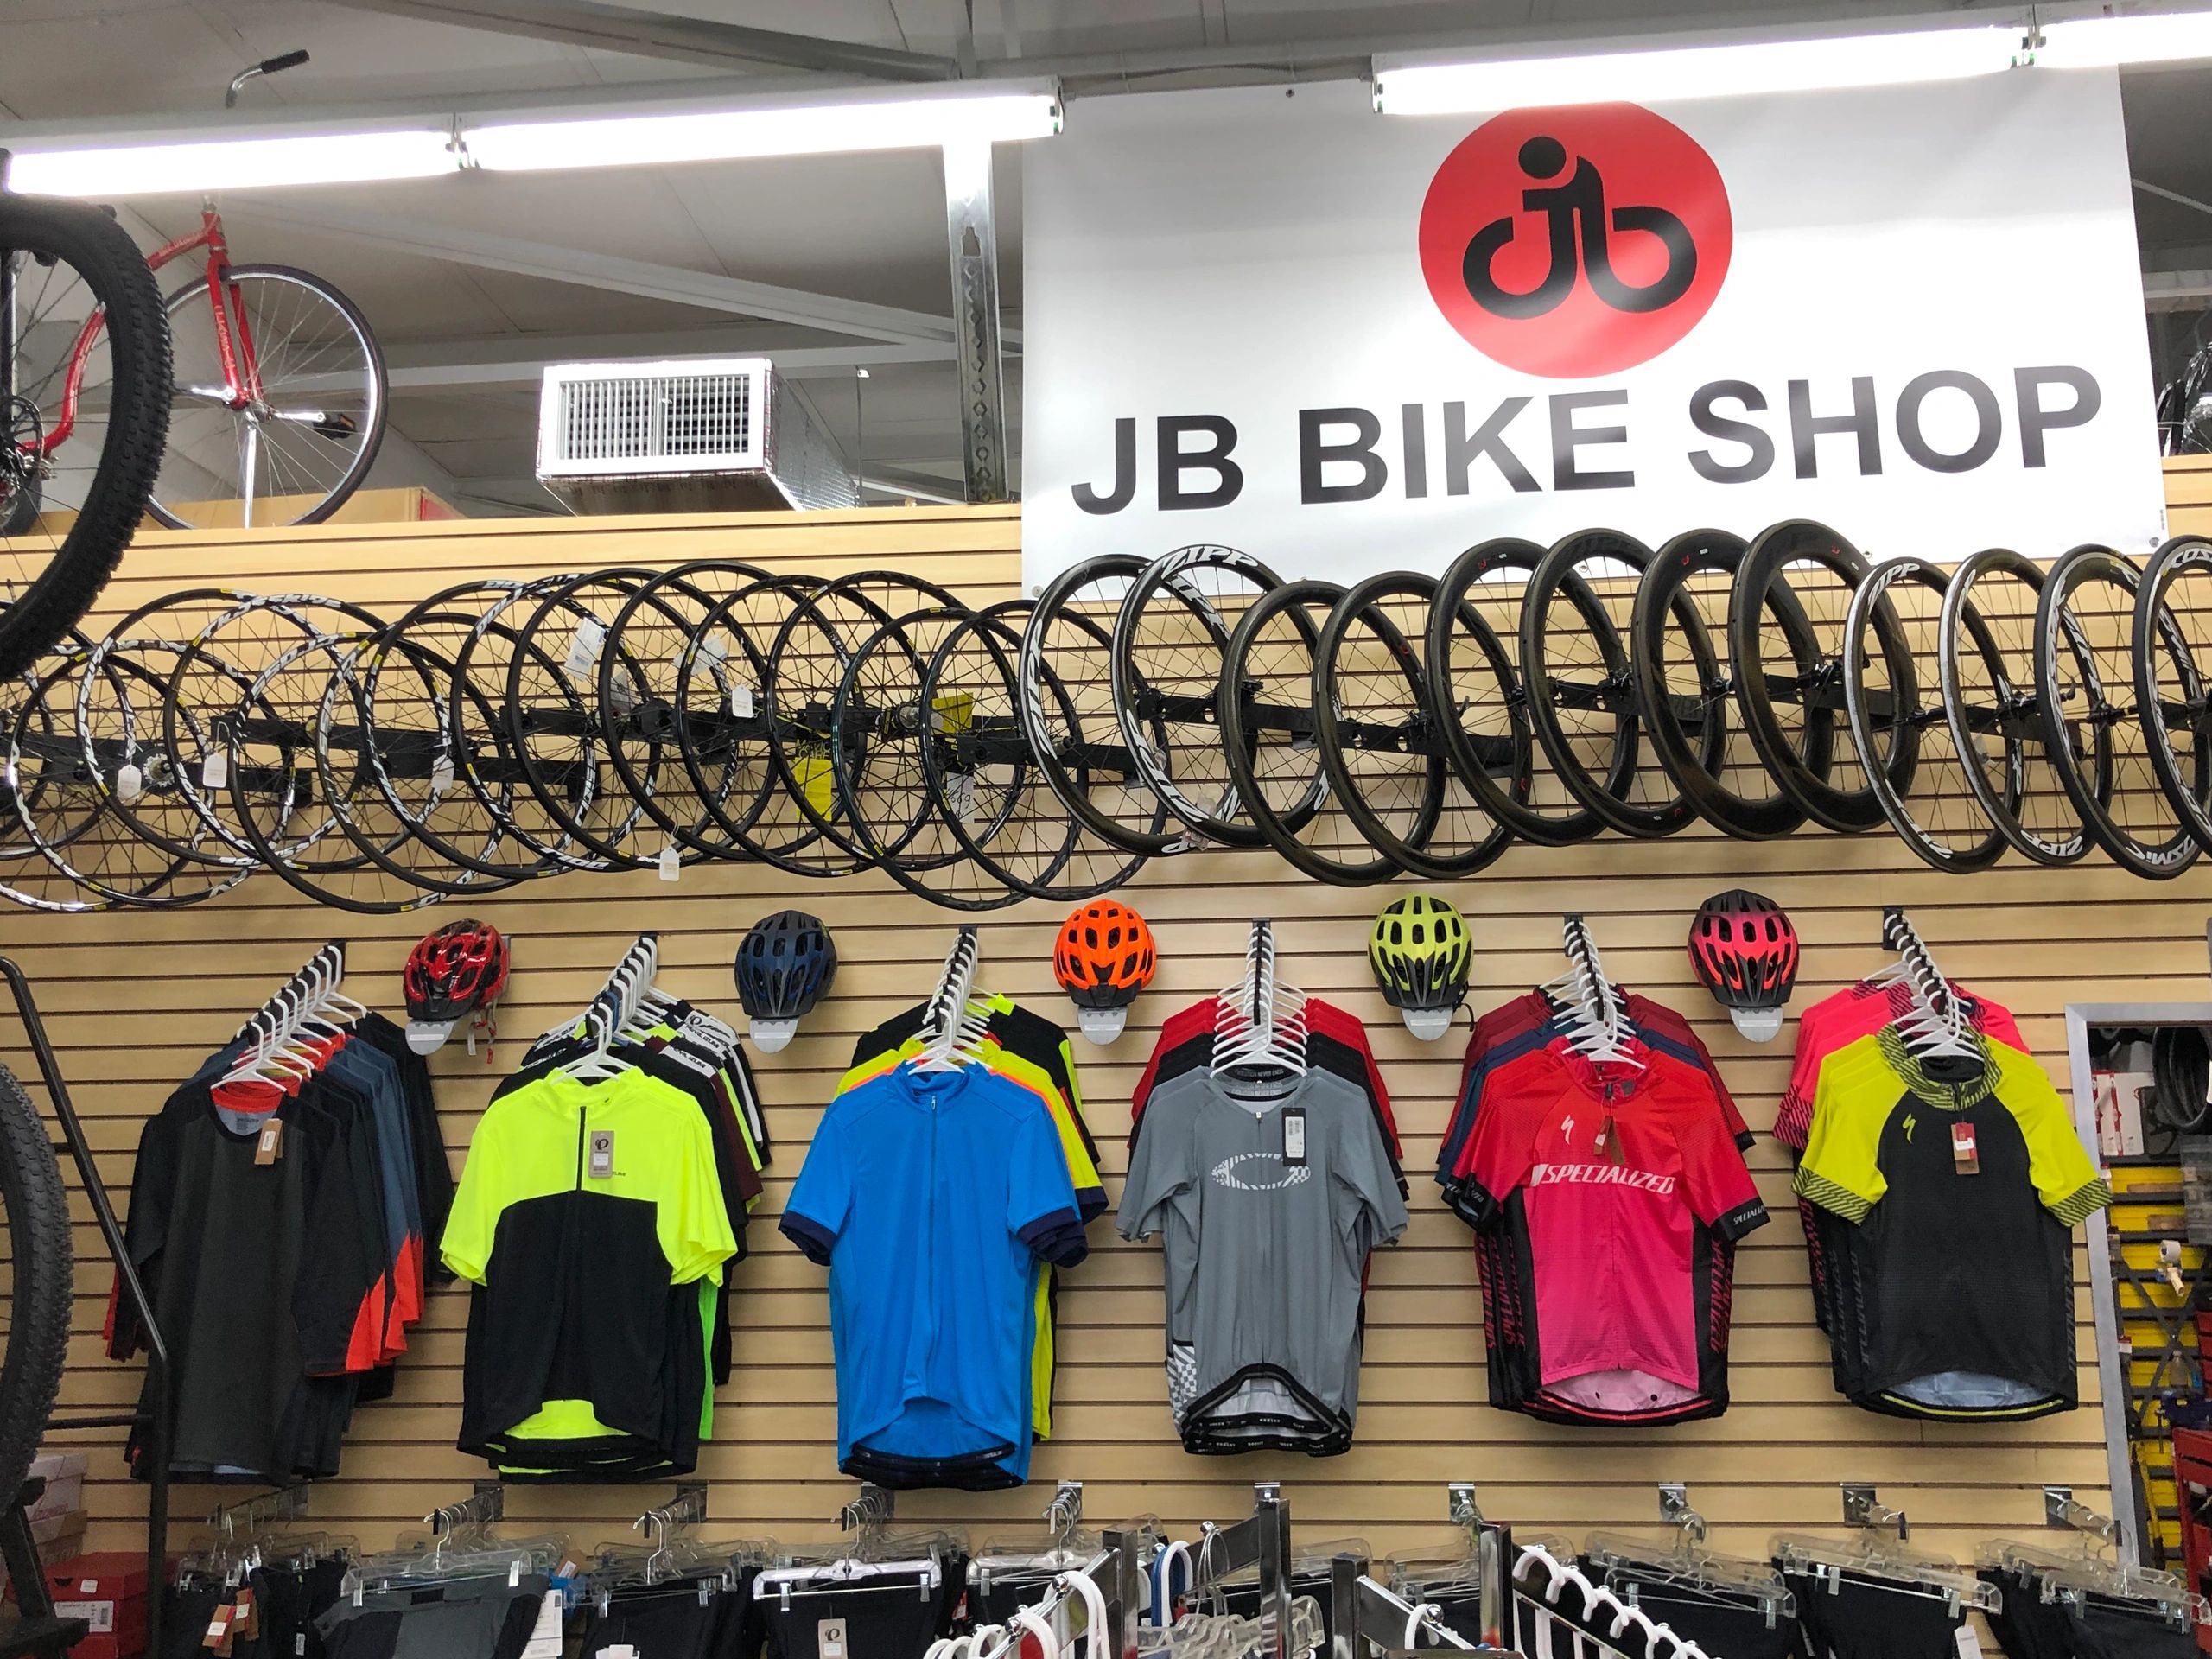 J B Bike Shop